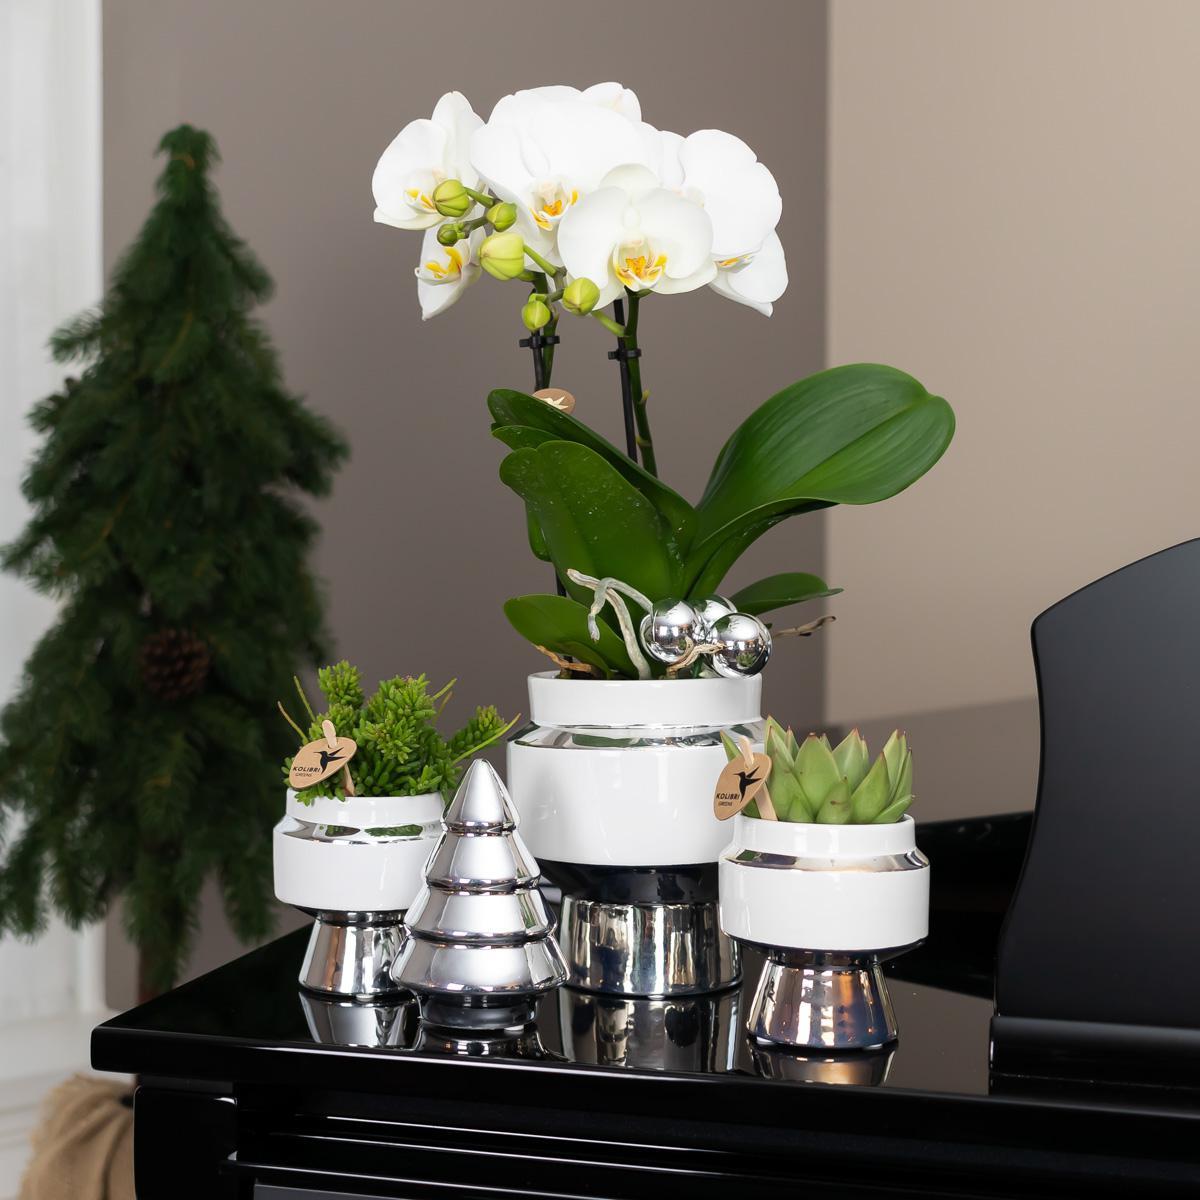 Hummingbird Home | Le Chic flowerpot - White ceramic decorative pot with silver details - pot size Ø6cm